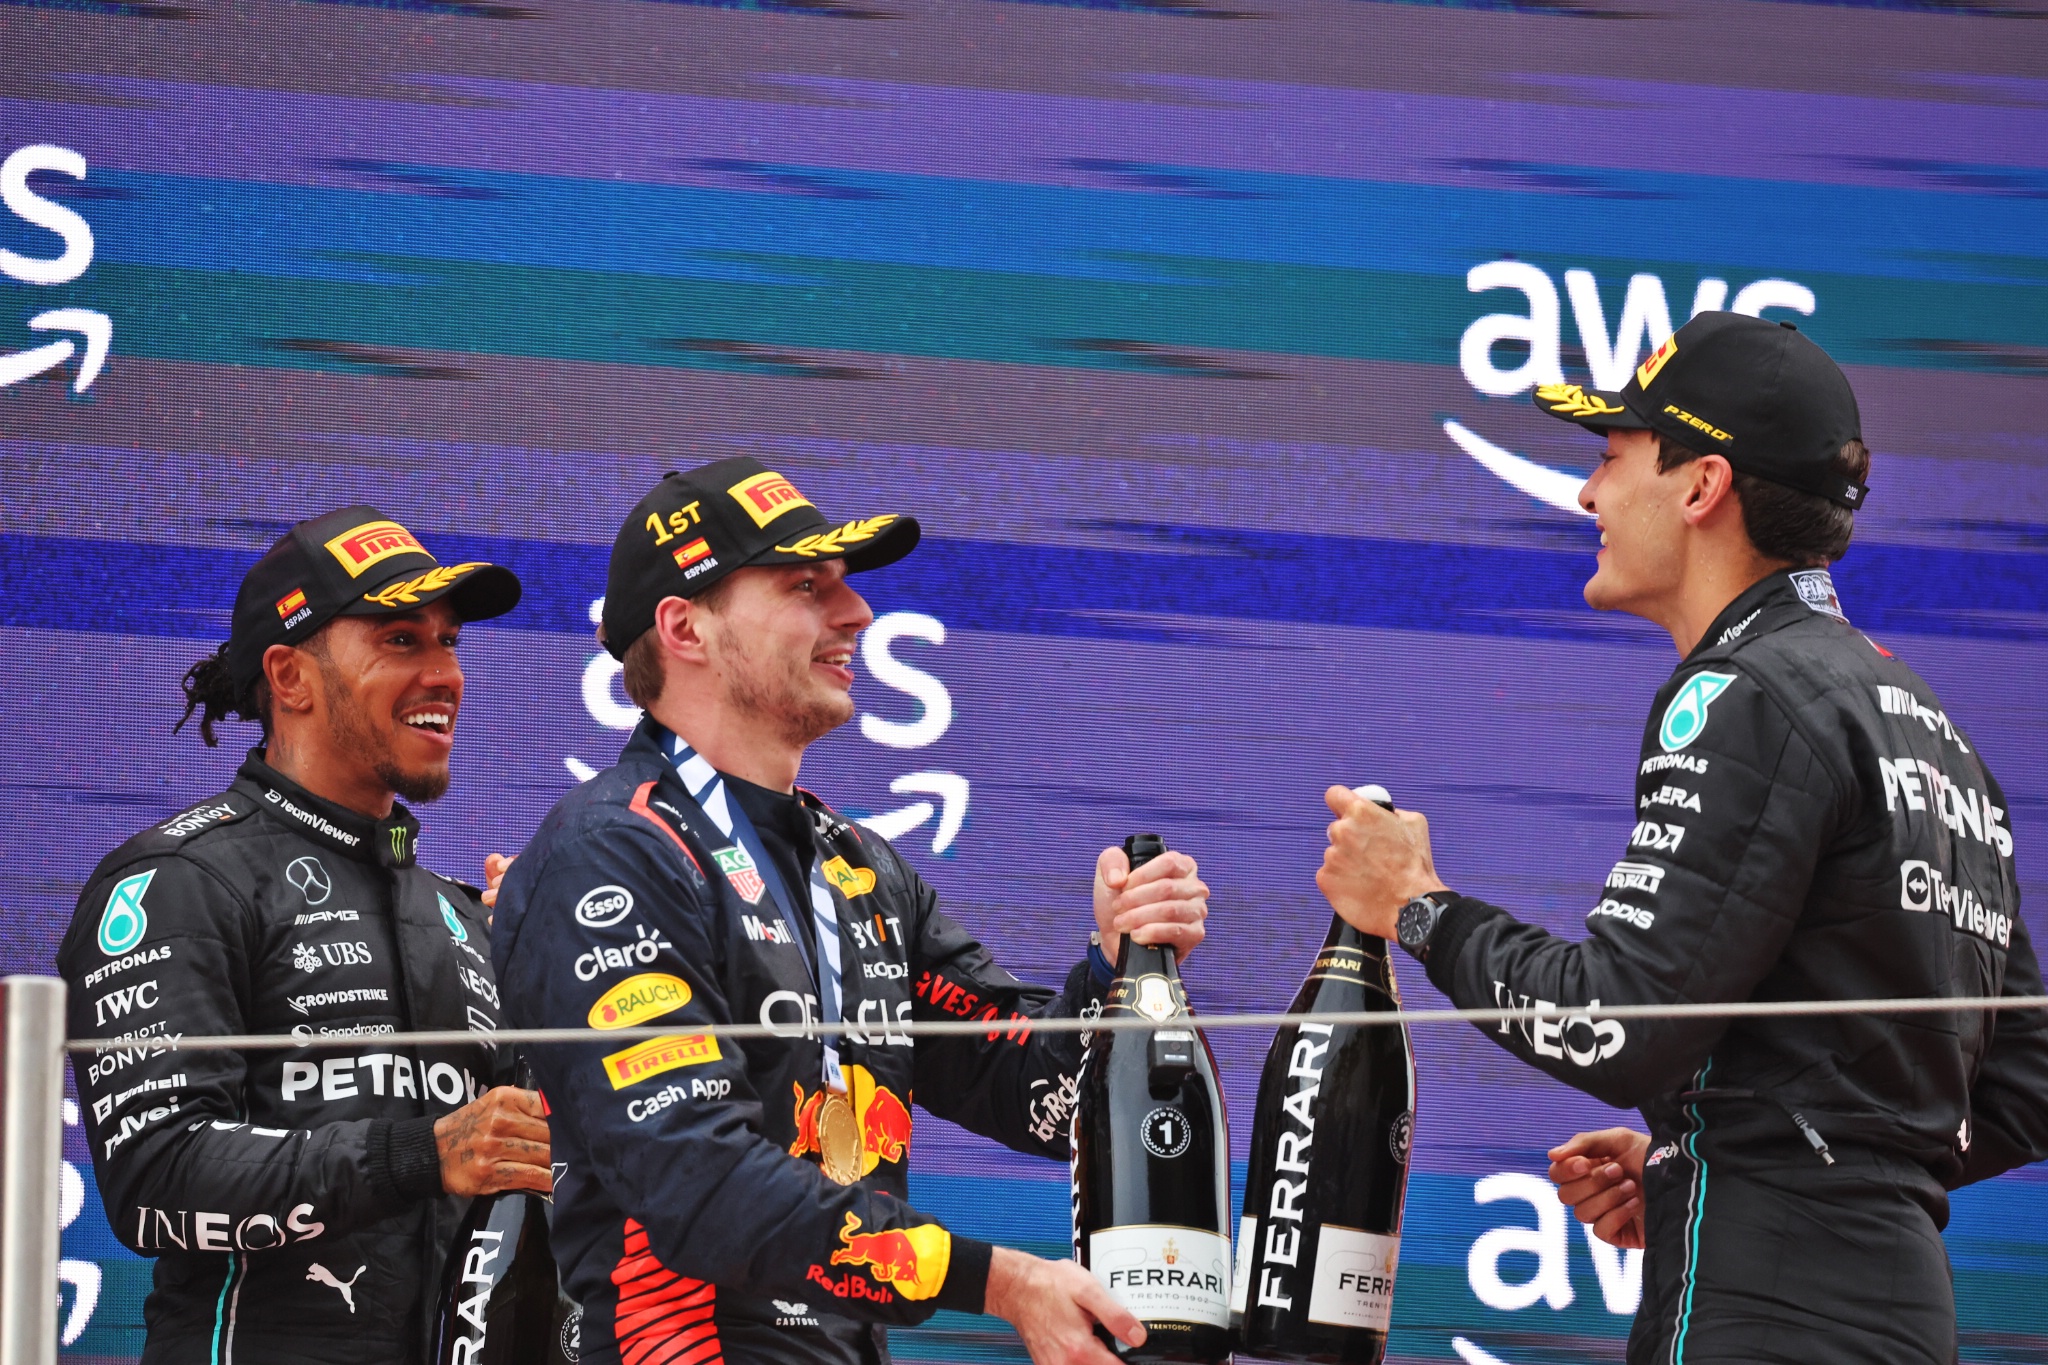 Podium (L ke Kanan): Lewis Hamilton (GBR) Mercedes AMG F1, kedua; Max Verstappen (NLD) Red Bull Racing, pemenang balapan; George